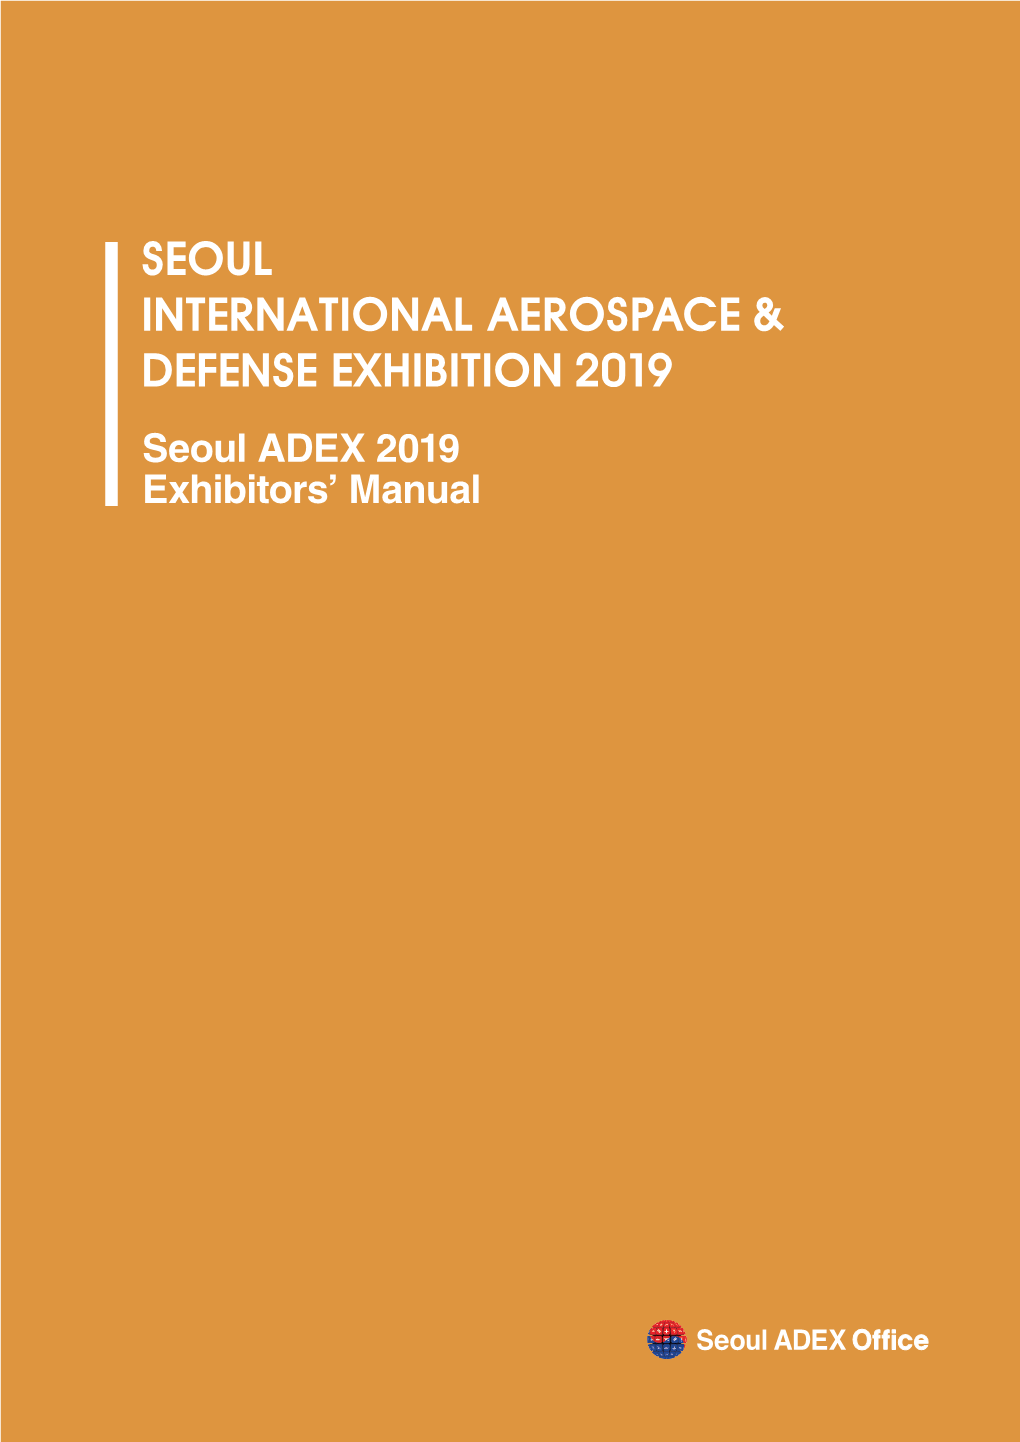 Seoul ADEX 2019 Exhibitors' Manual